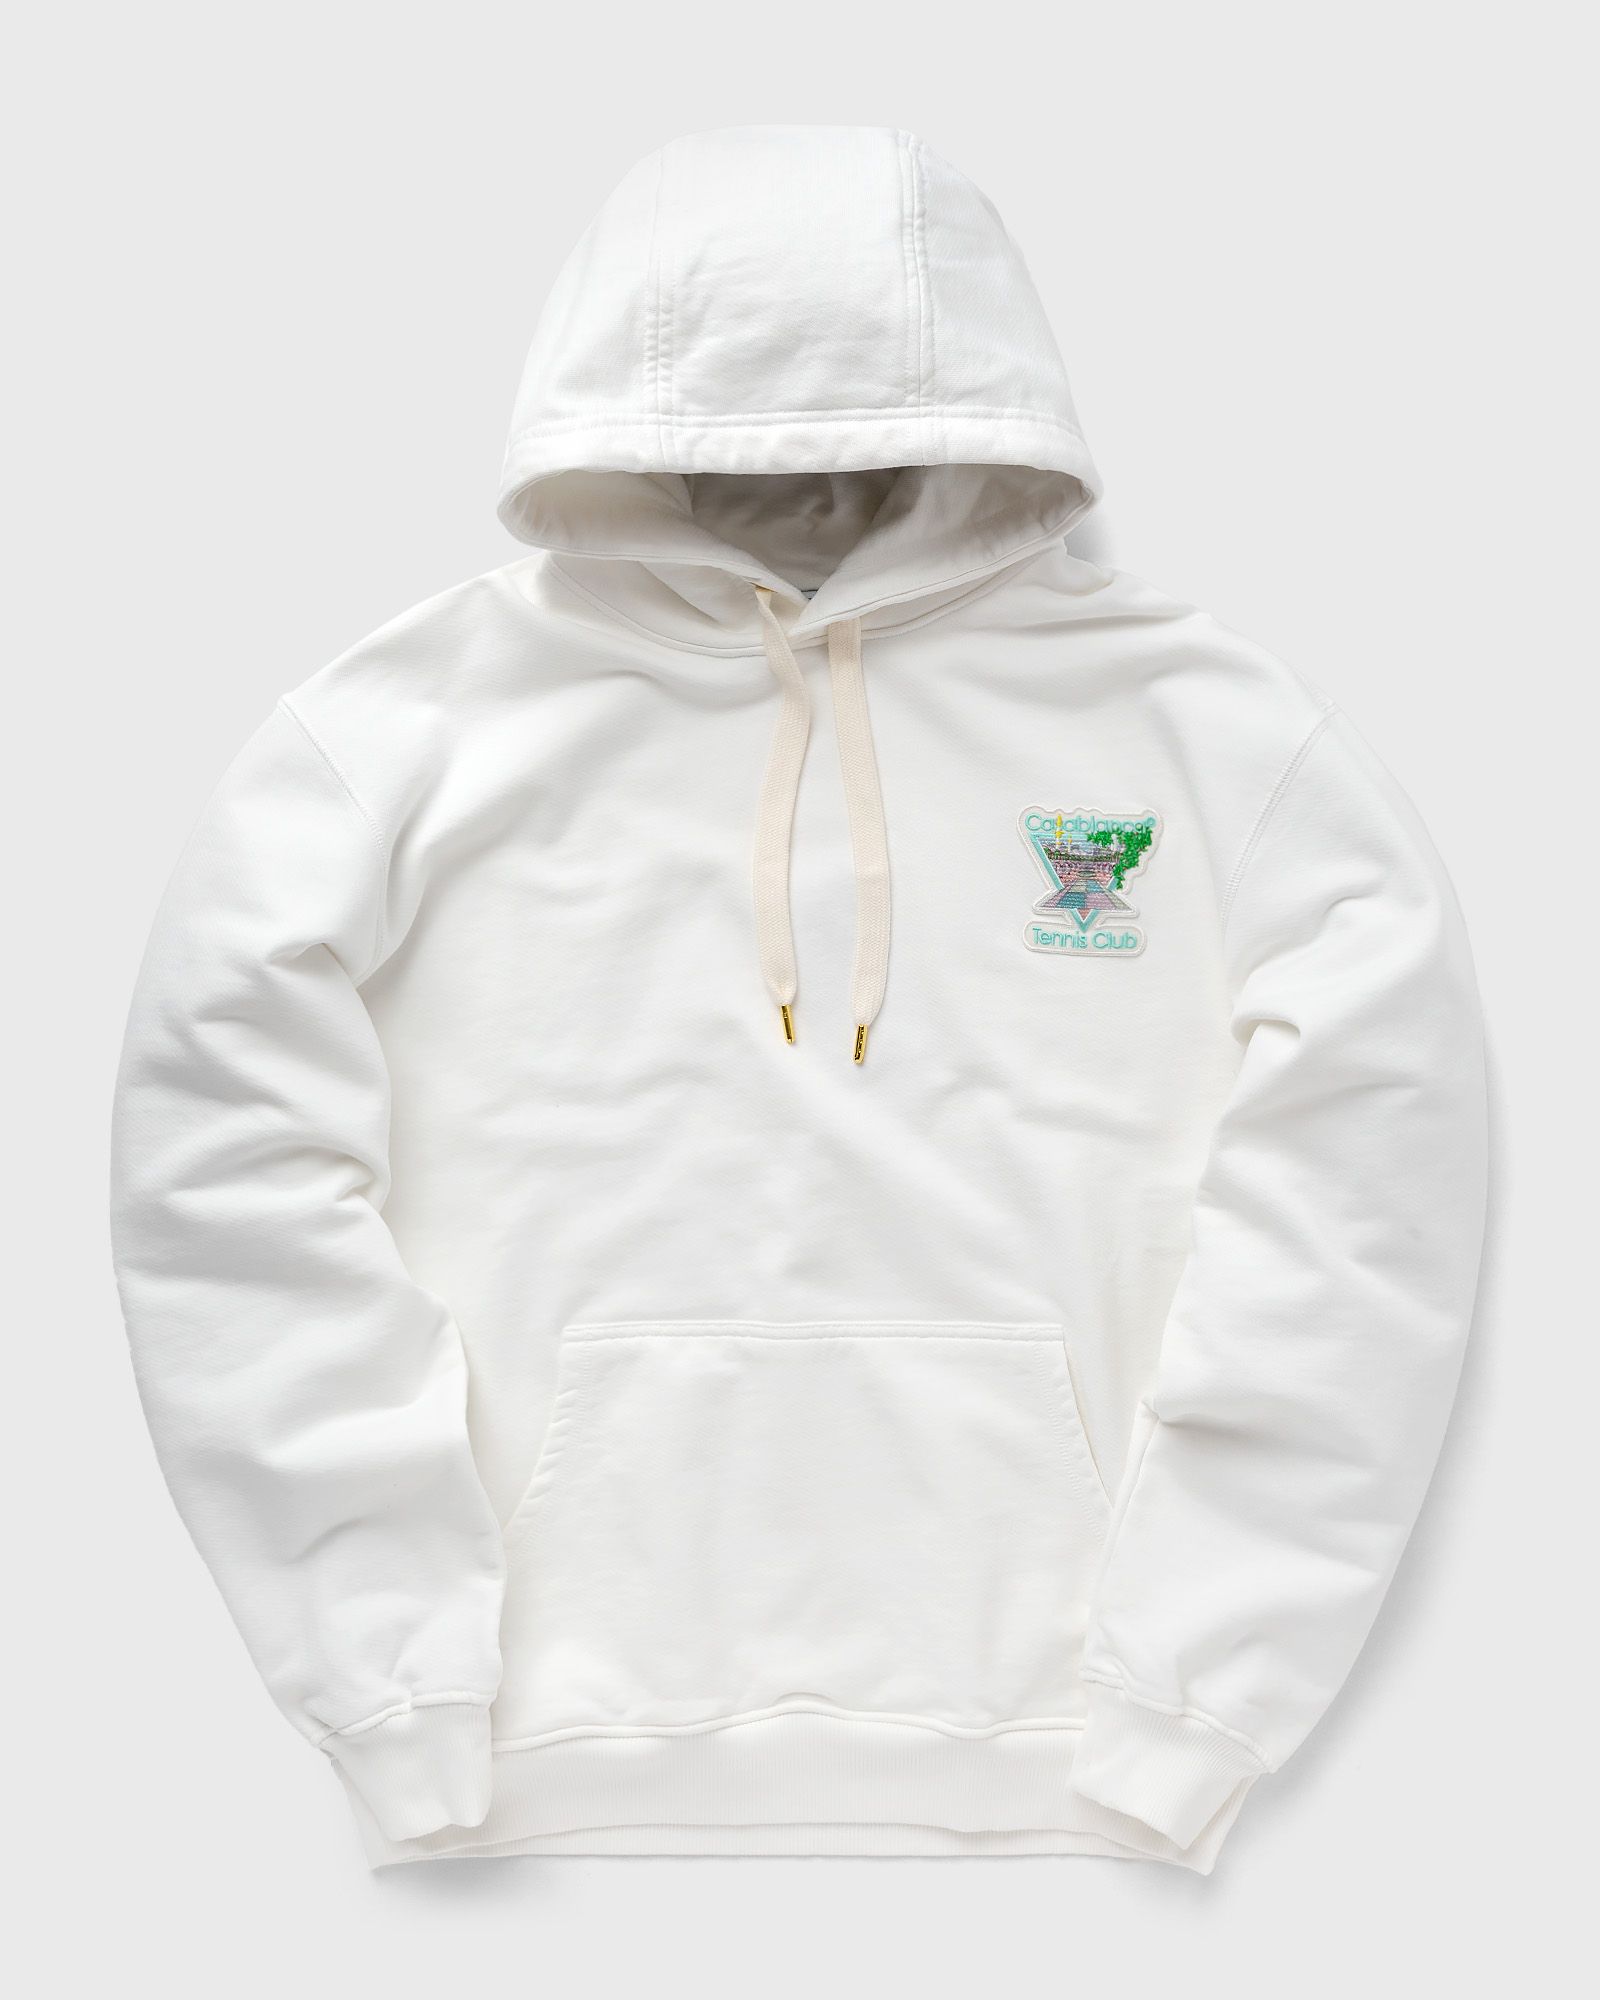 Casablanca - tennis club icon pastelle unisex hooded sweatshirt men hoodies white in größe:m